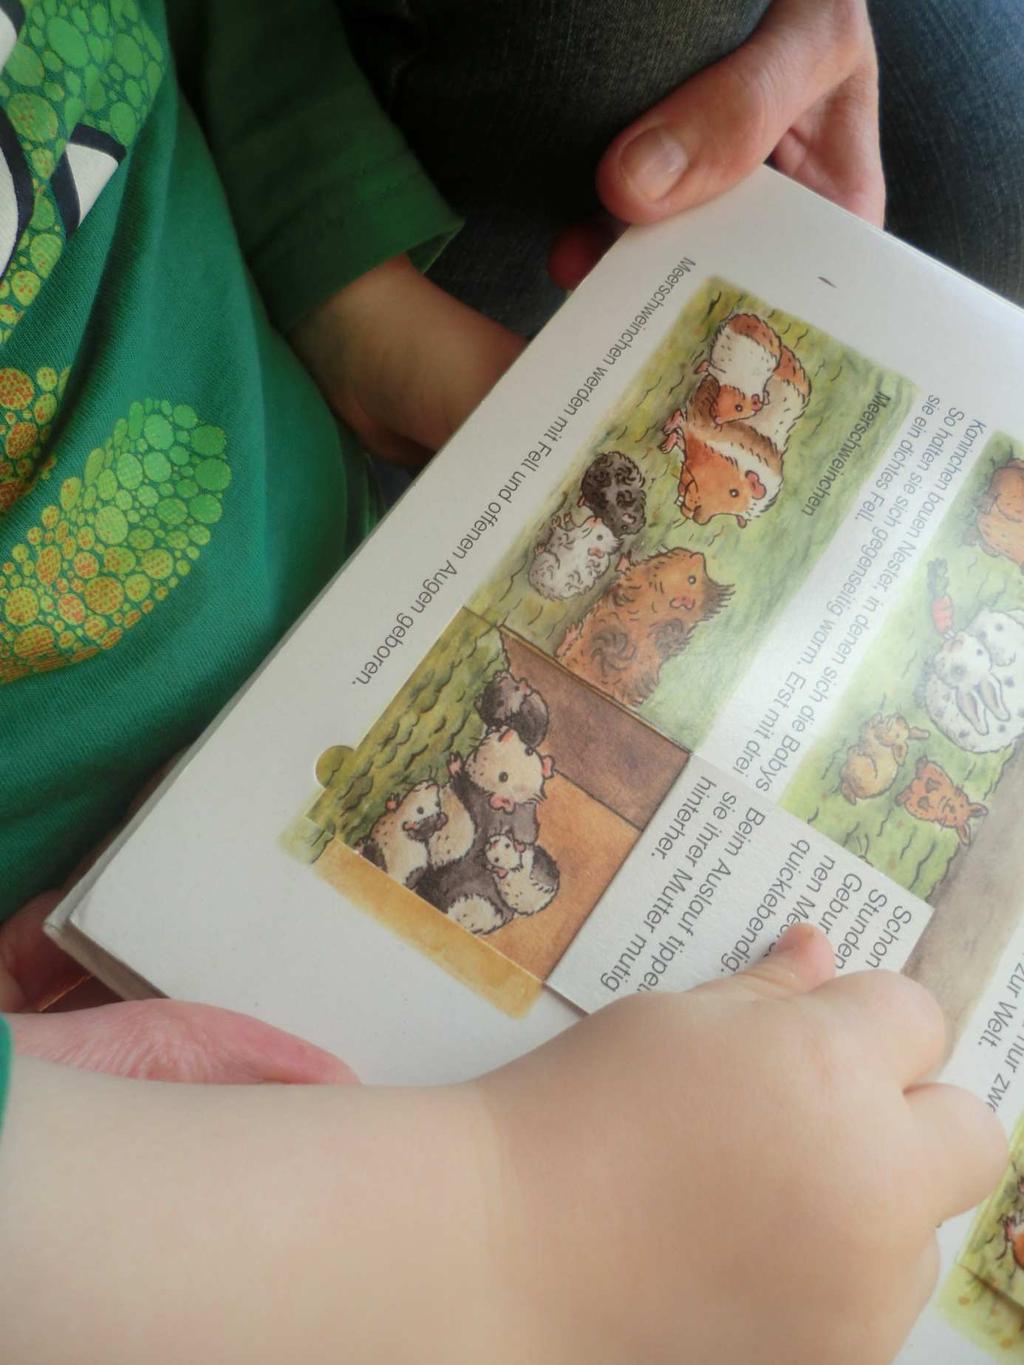 Hagen hat im Bilderbuch ein Hamsterrad entdeckt und möchte wissen, ob wir auch so ein,,rad" für unsere Tiere brauchen.